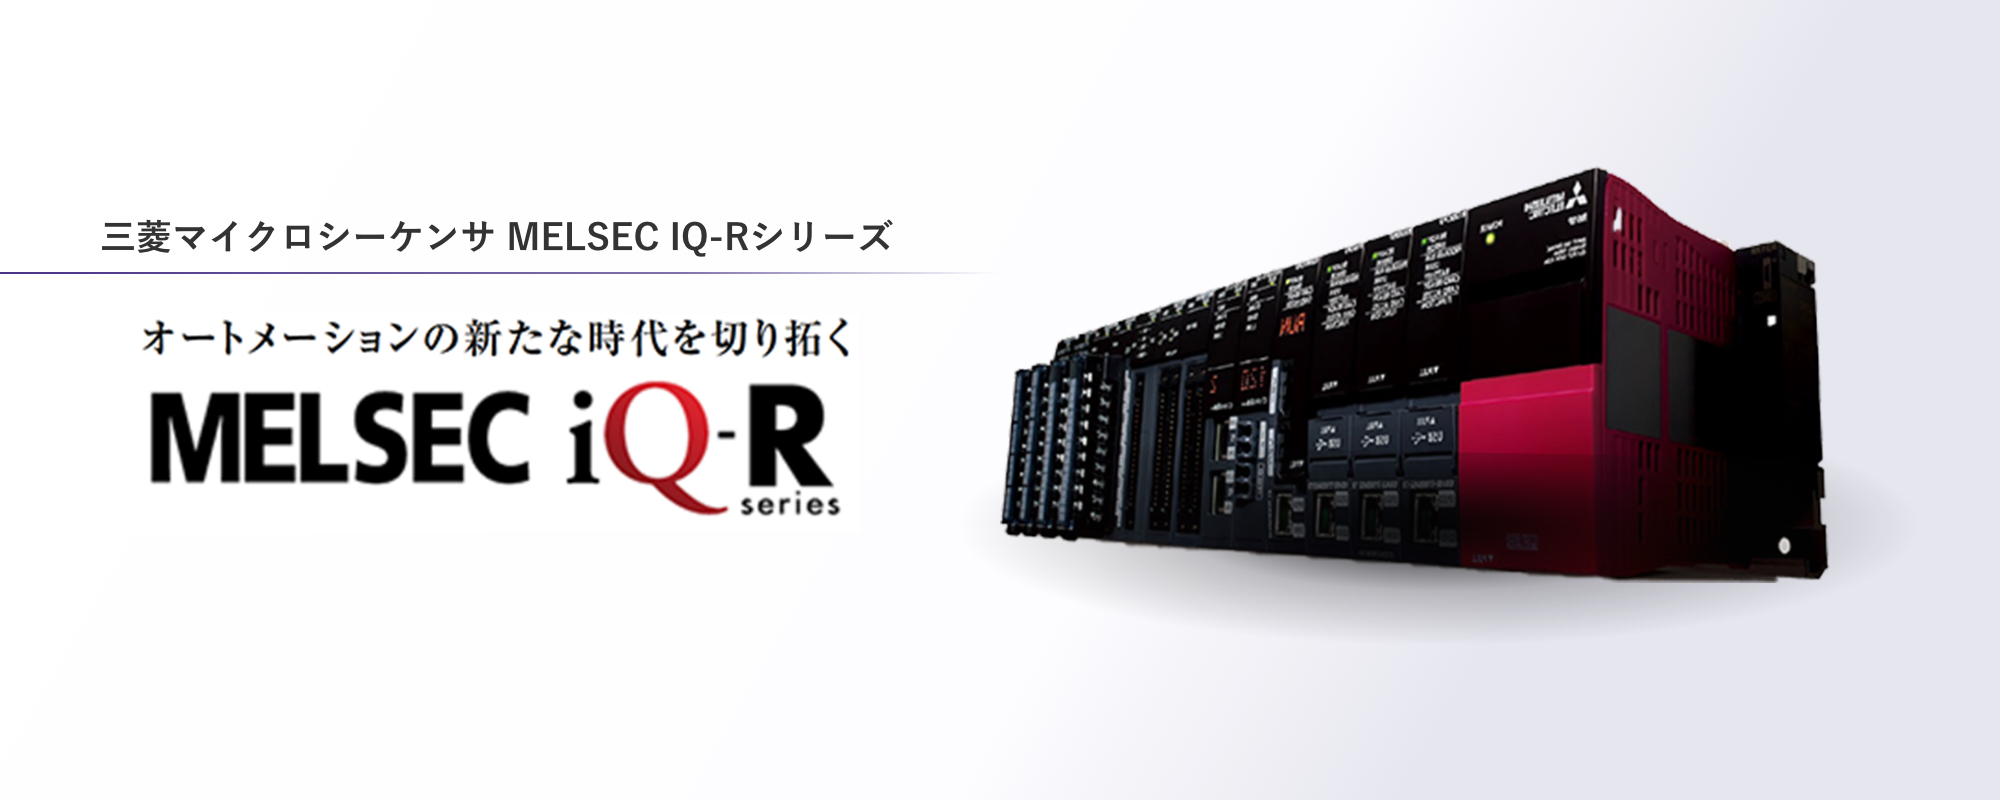 三菱マイクロシーケンサ MELSEC IQ-Rシリーズ。オートメーションの新たな時代を切り開く「iQ-R」Series